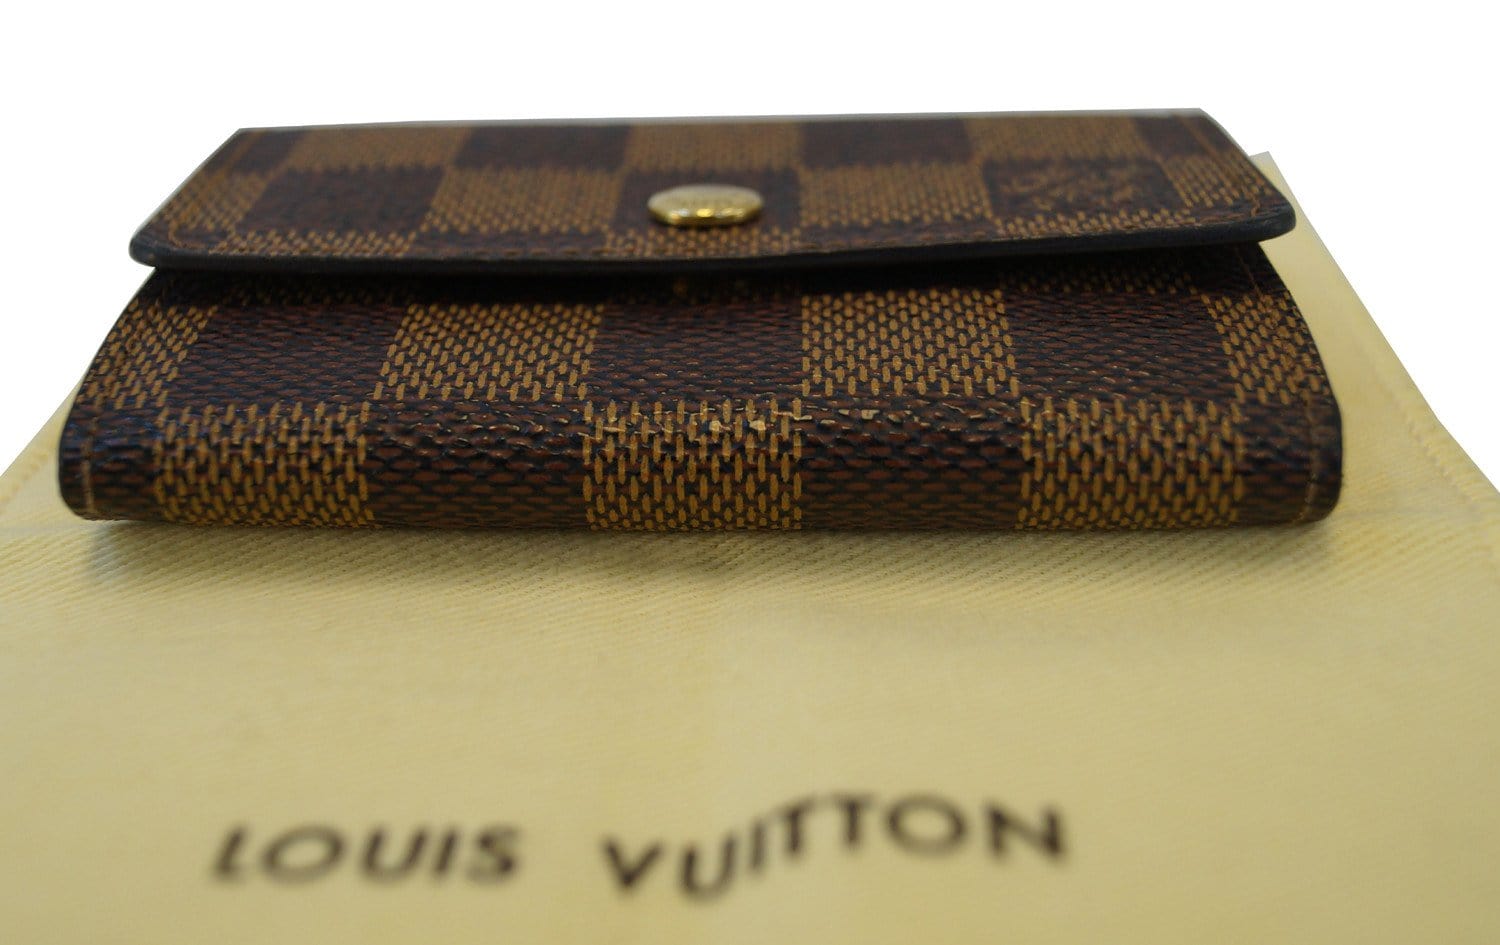 Louis Vuitton Porte Monnaie Plat Change Purse